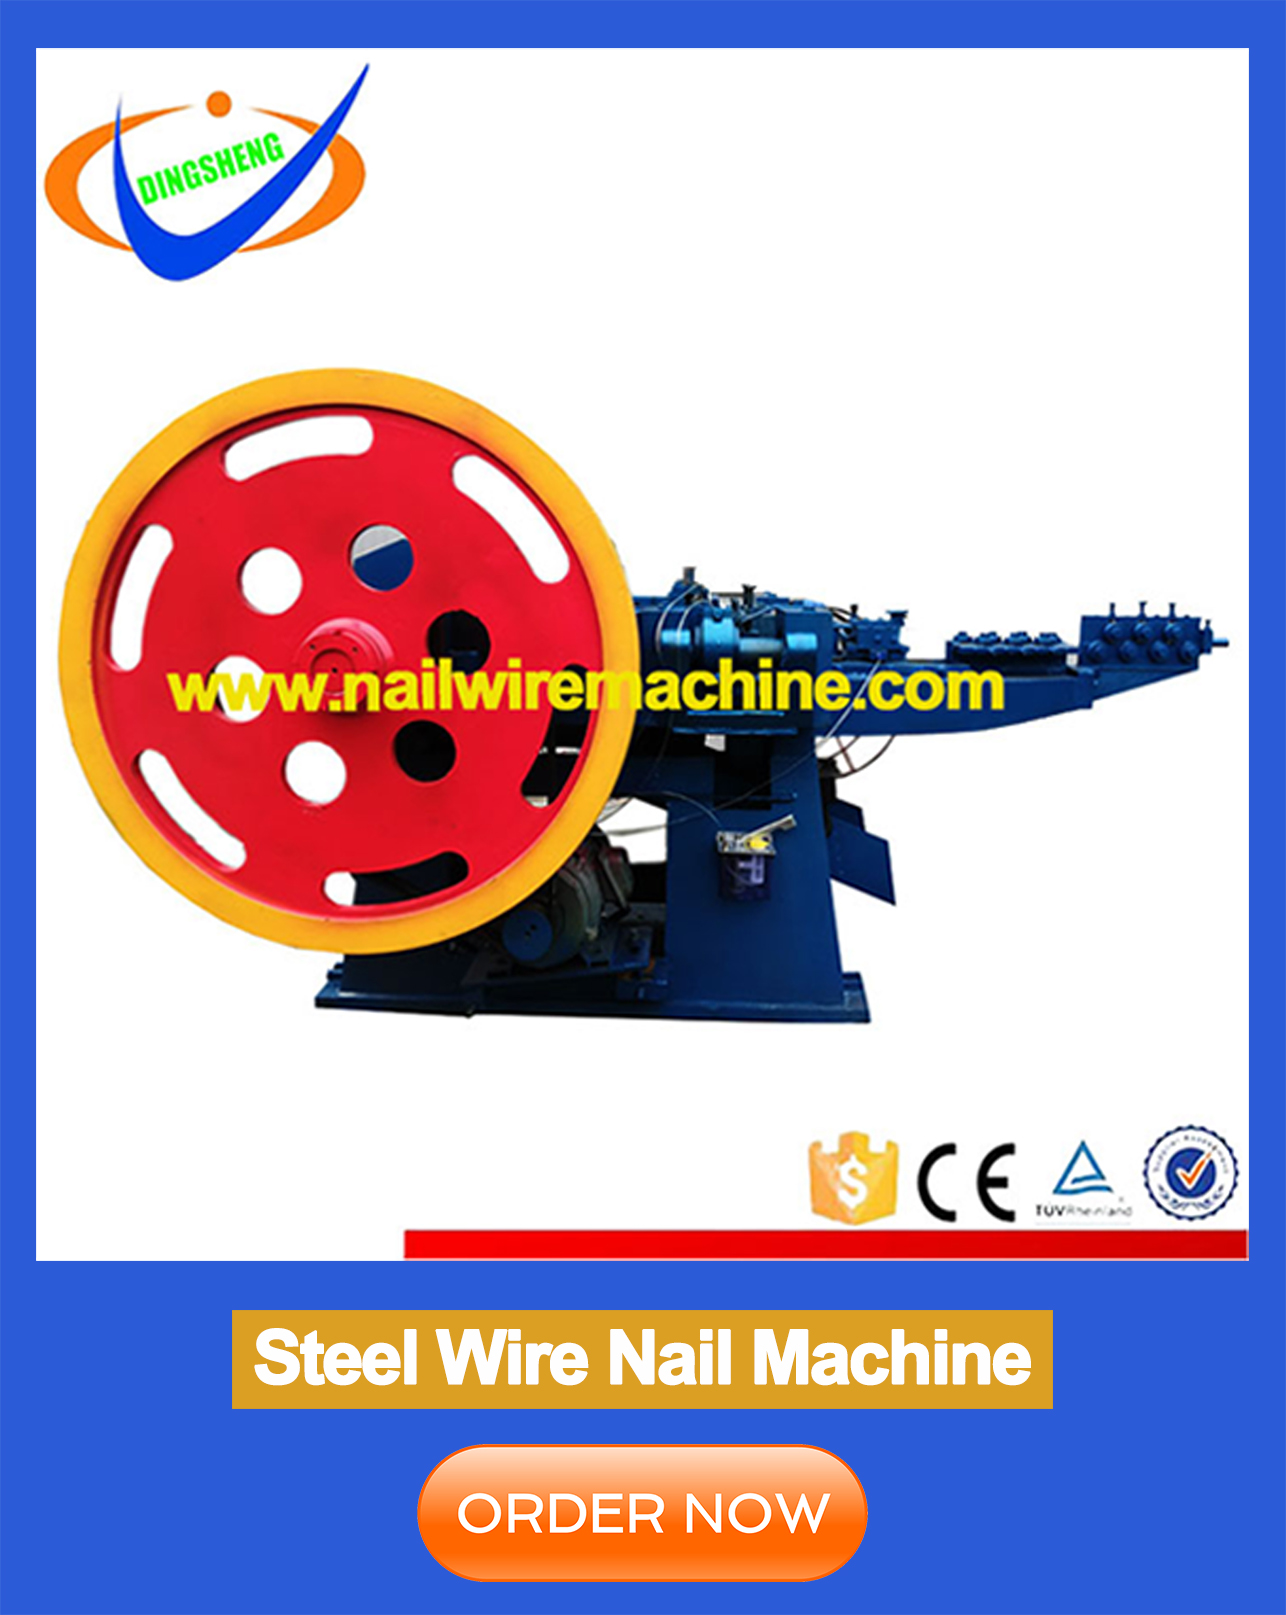 Automatic steel <a href=https://www.nailwiremachine.com/Automatic-steel-wire-nail-making-machine-Z94-1C-p.html target='_blank'>wire nail making machine</a> Z94-1C